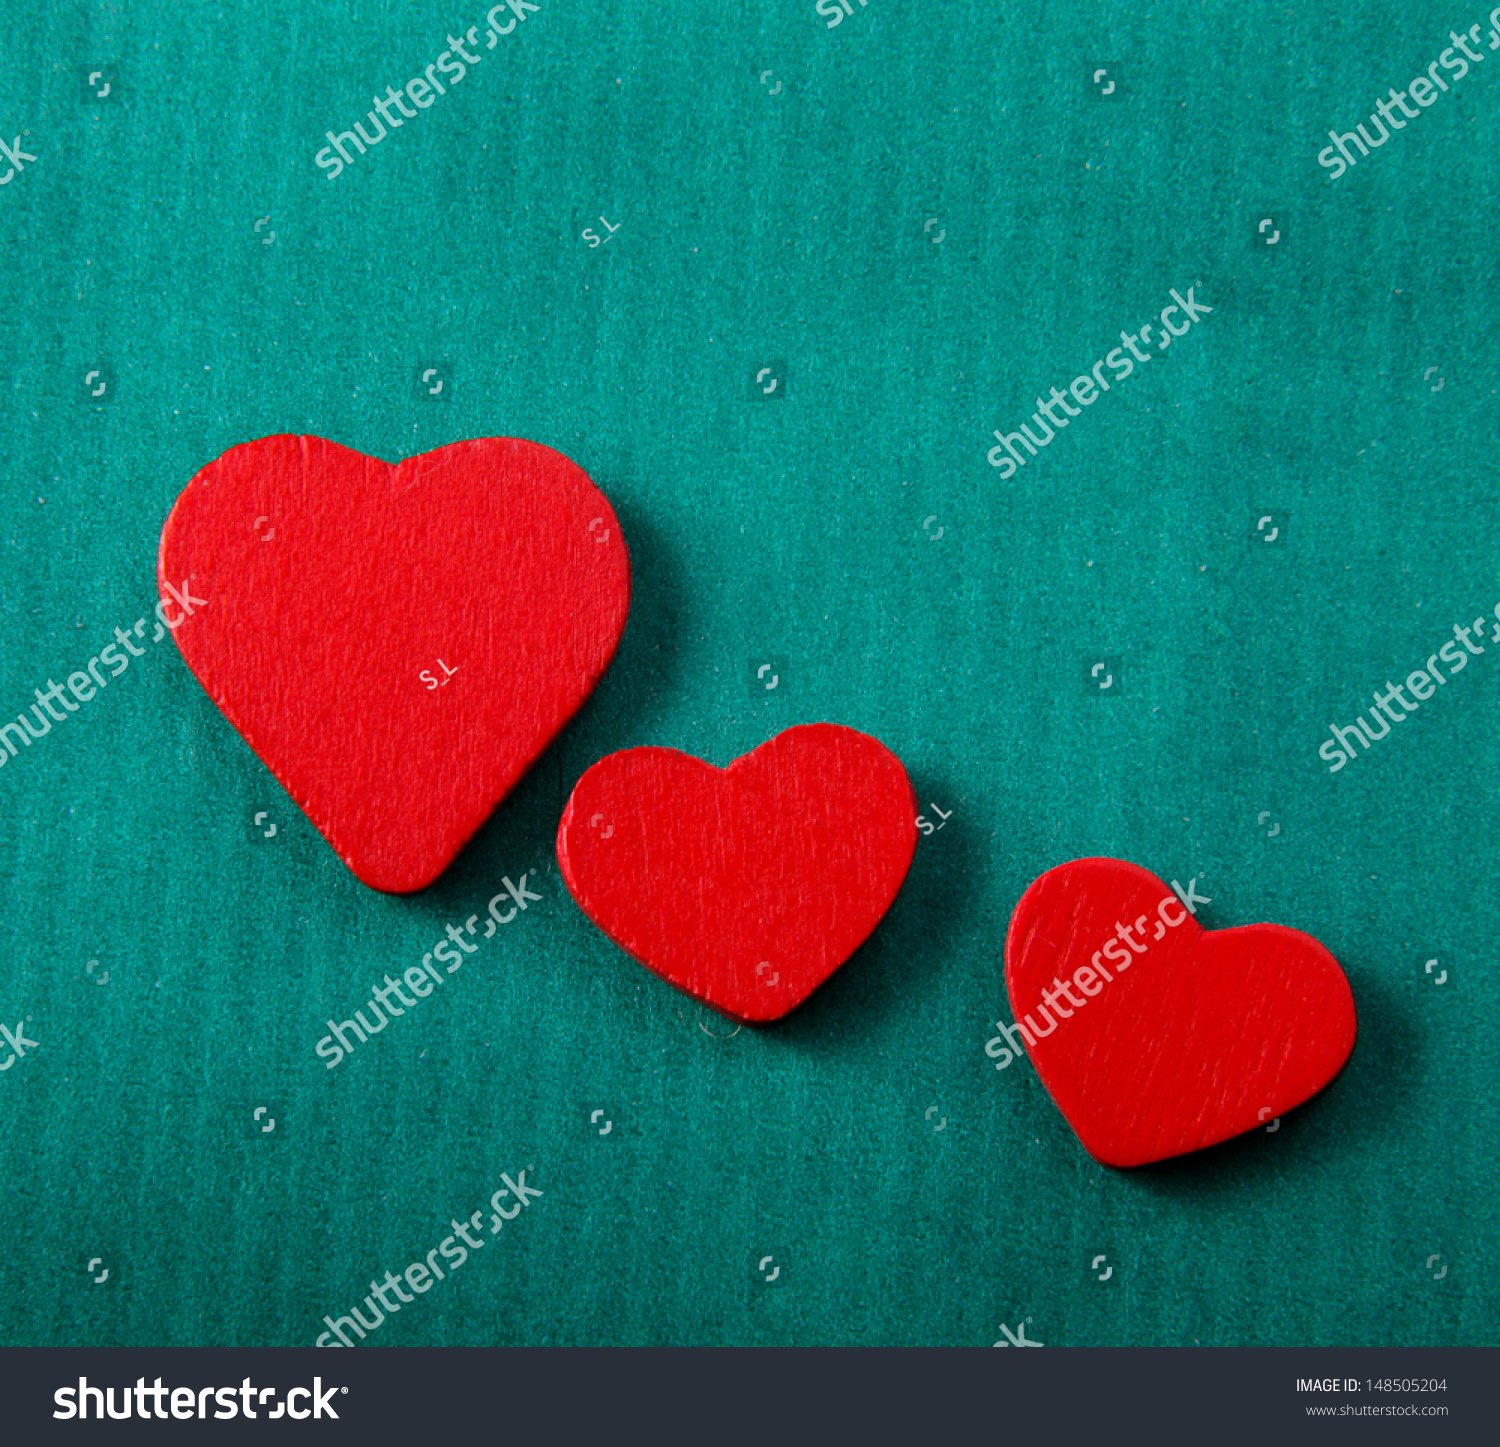 Hearts #148505204